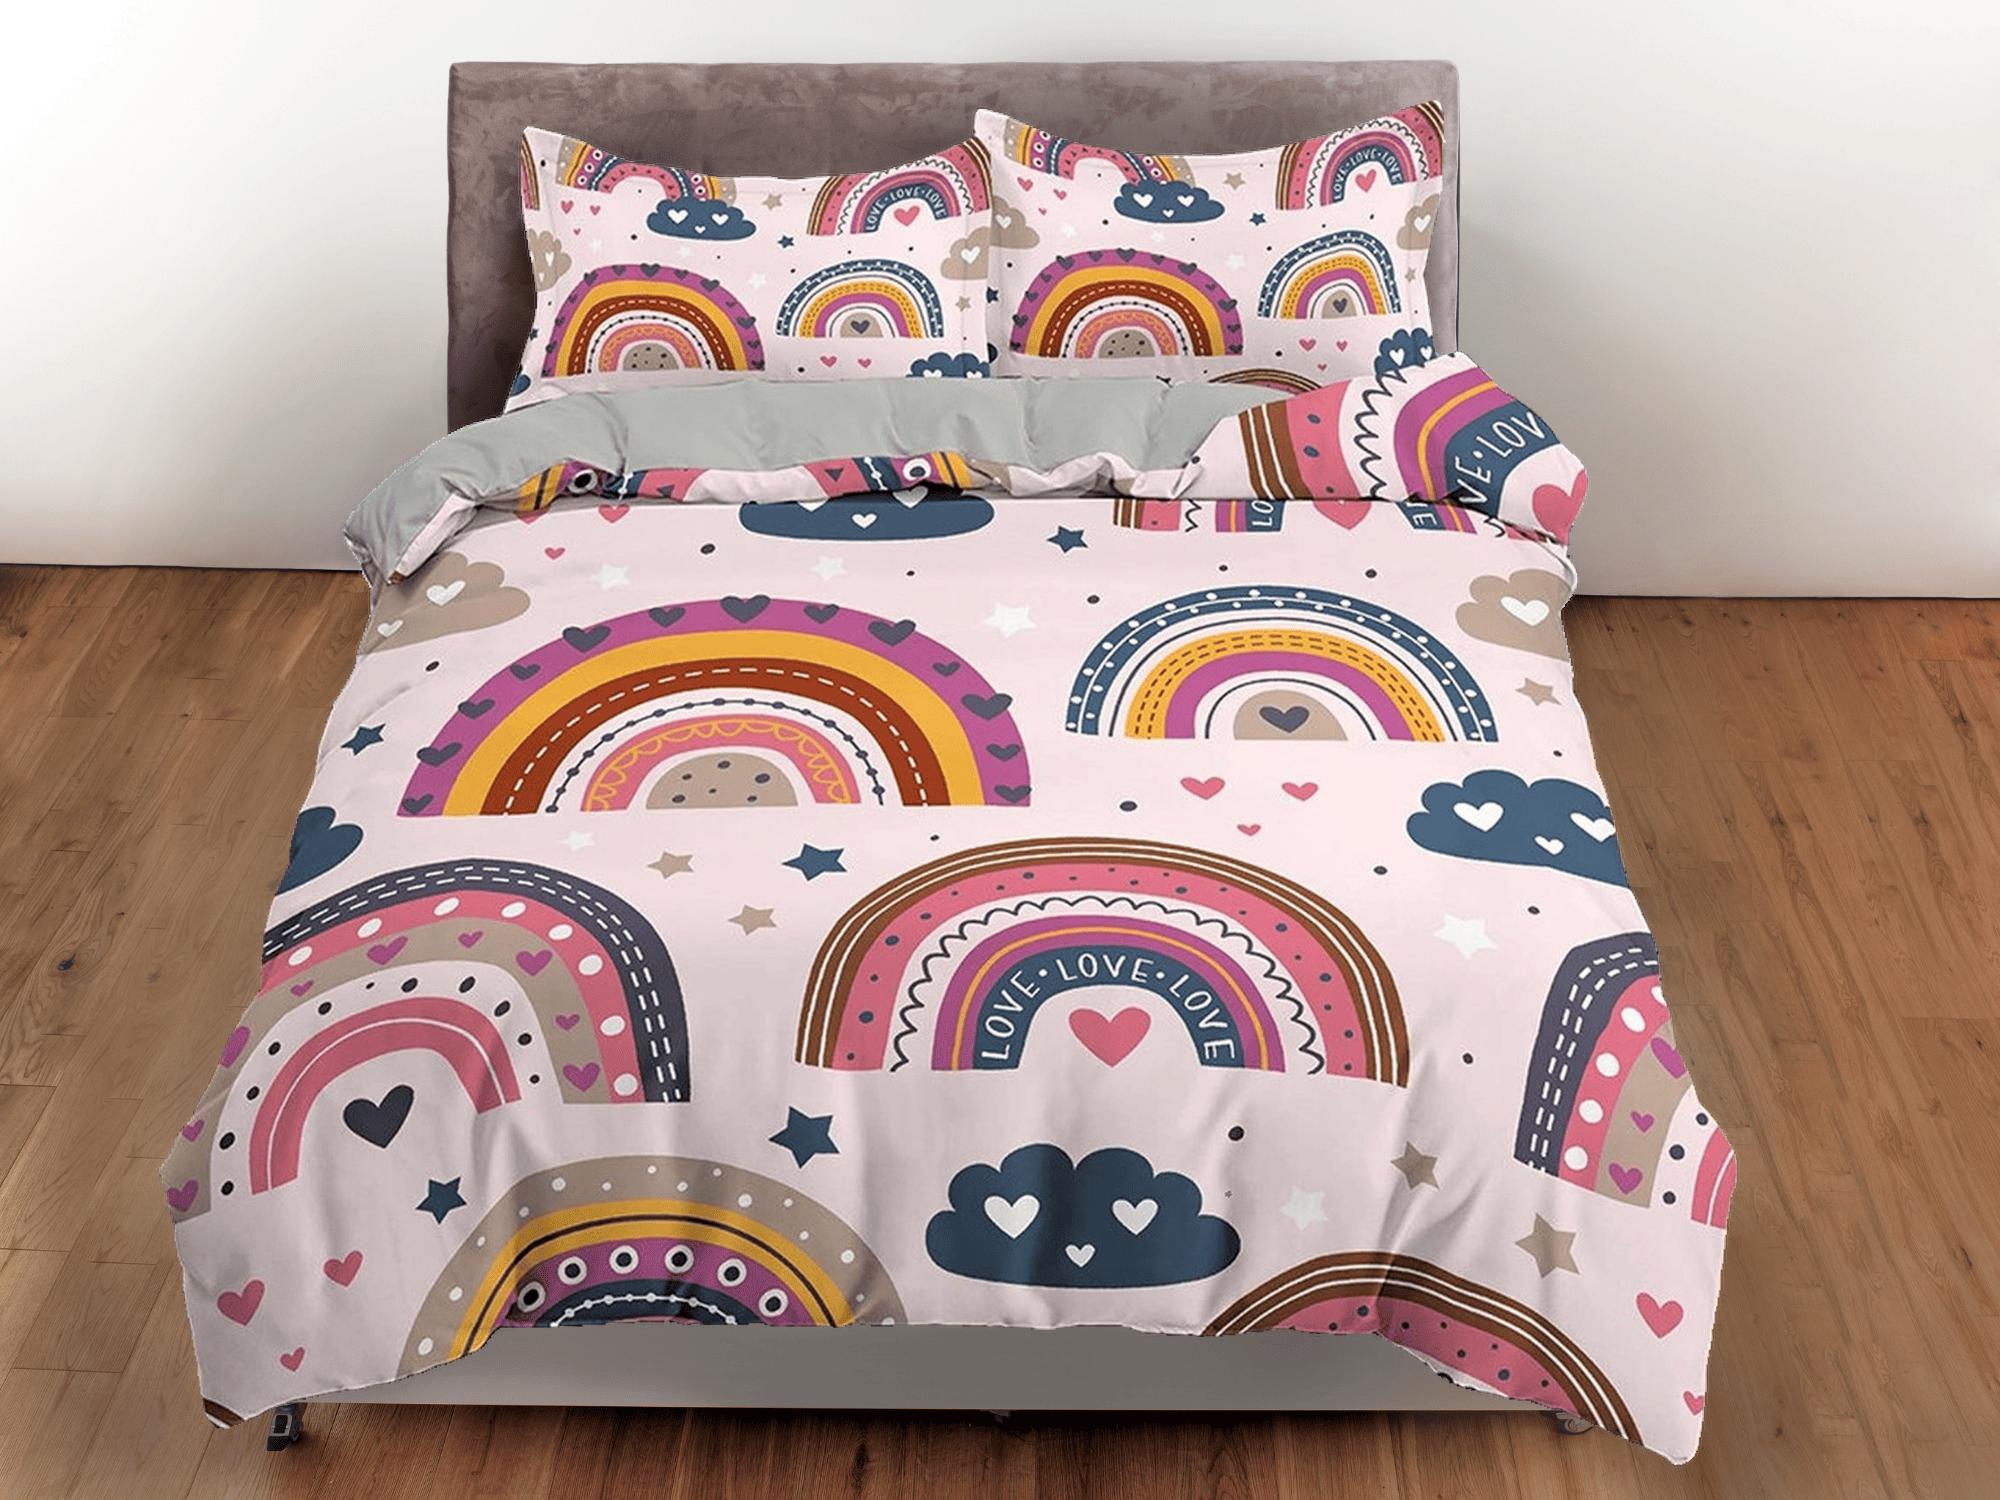 daintyduvet Boho Rainbow Bedding Nordic Design, Dorm Bedding Adult Duvet Cover, Toddler Bedding, Aesthetic Duvet Cover King Queen Full Twin Single